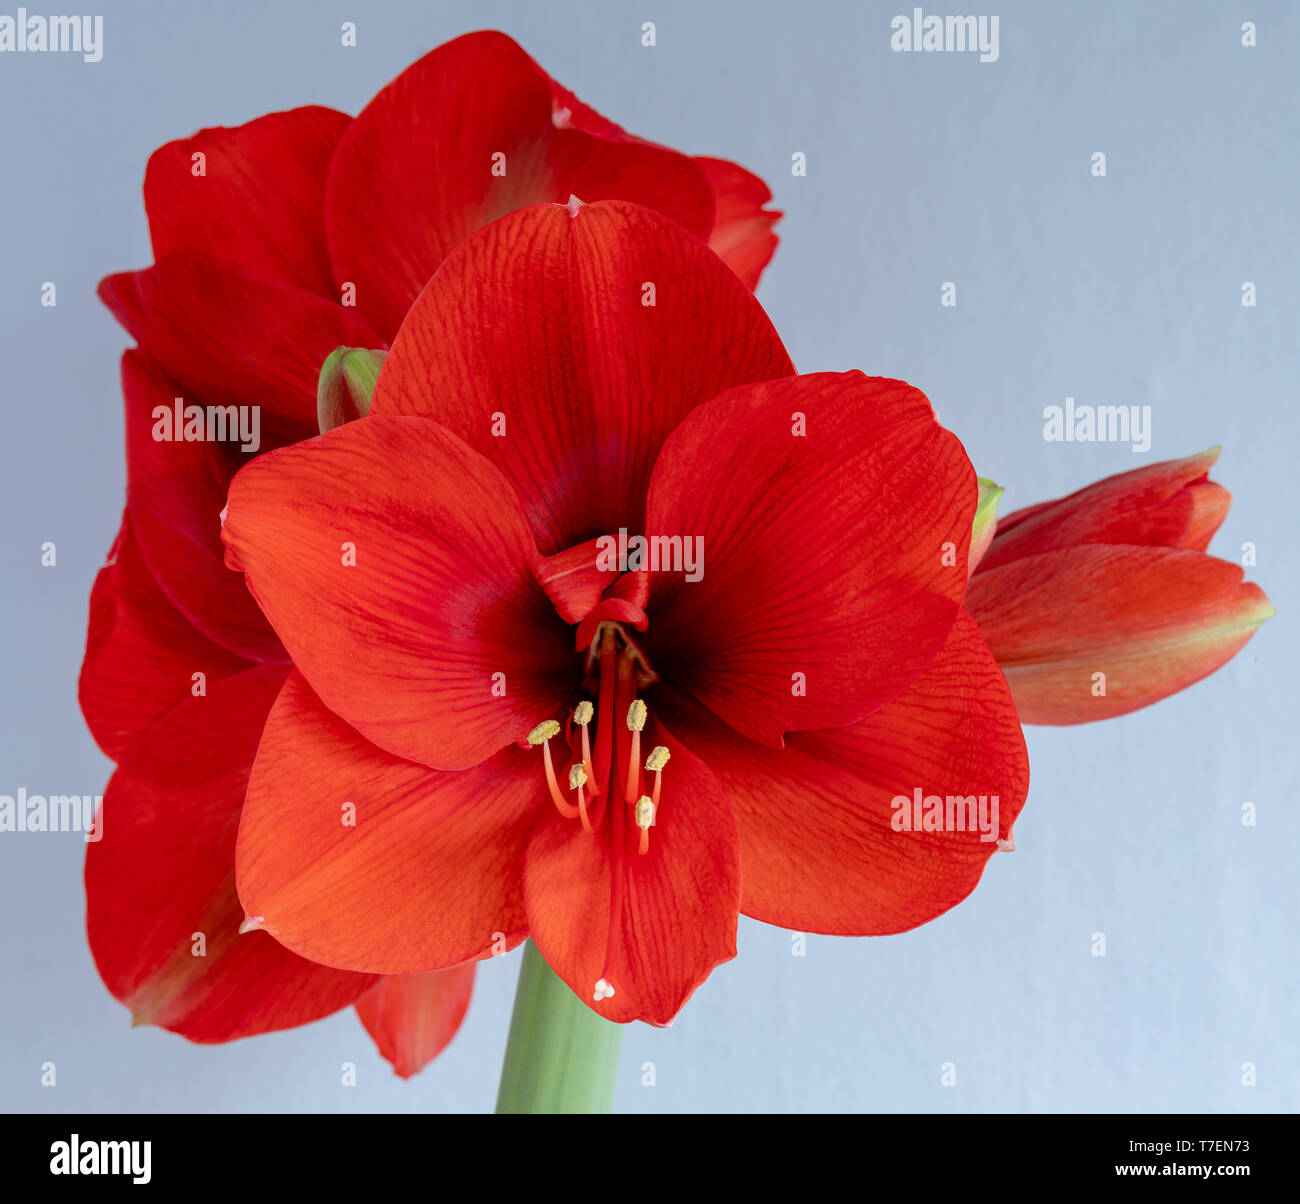 Amaryllis Lampe drinnen in der Blüte gewachsen, die die Blüten und Blätter, und die Struktur einschließlich der Staubfaden, Filamenten und Antheren. Stockfoto